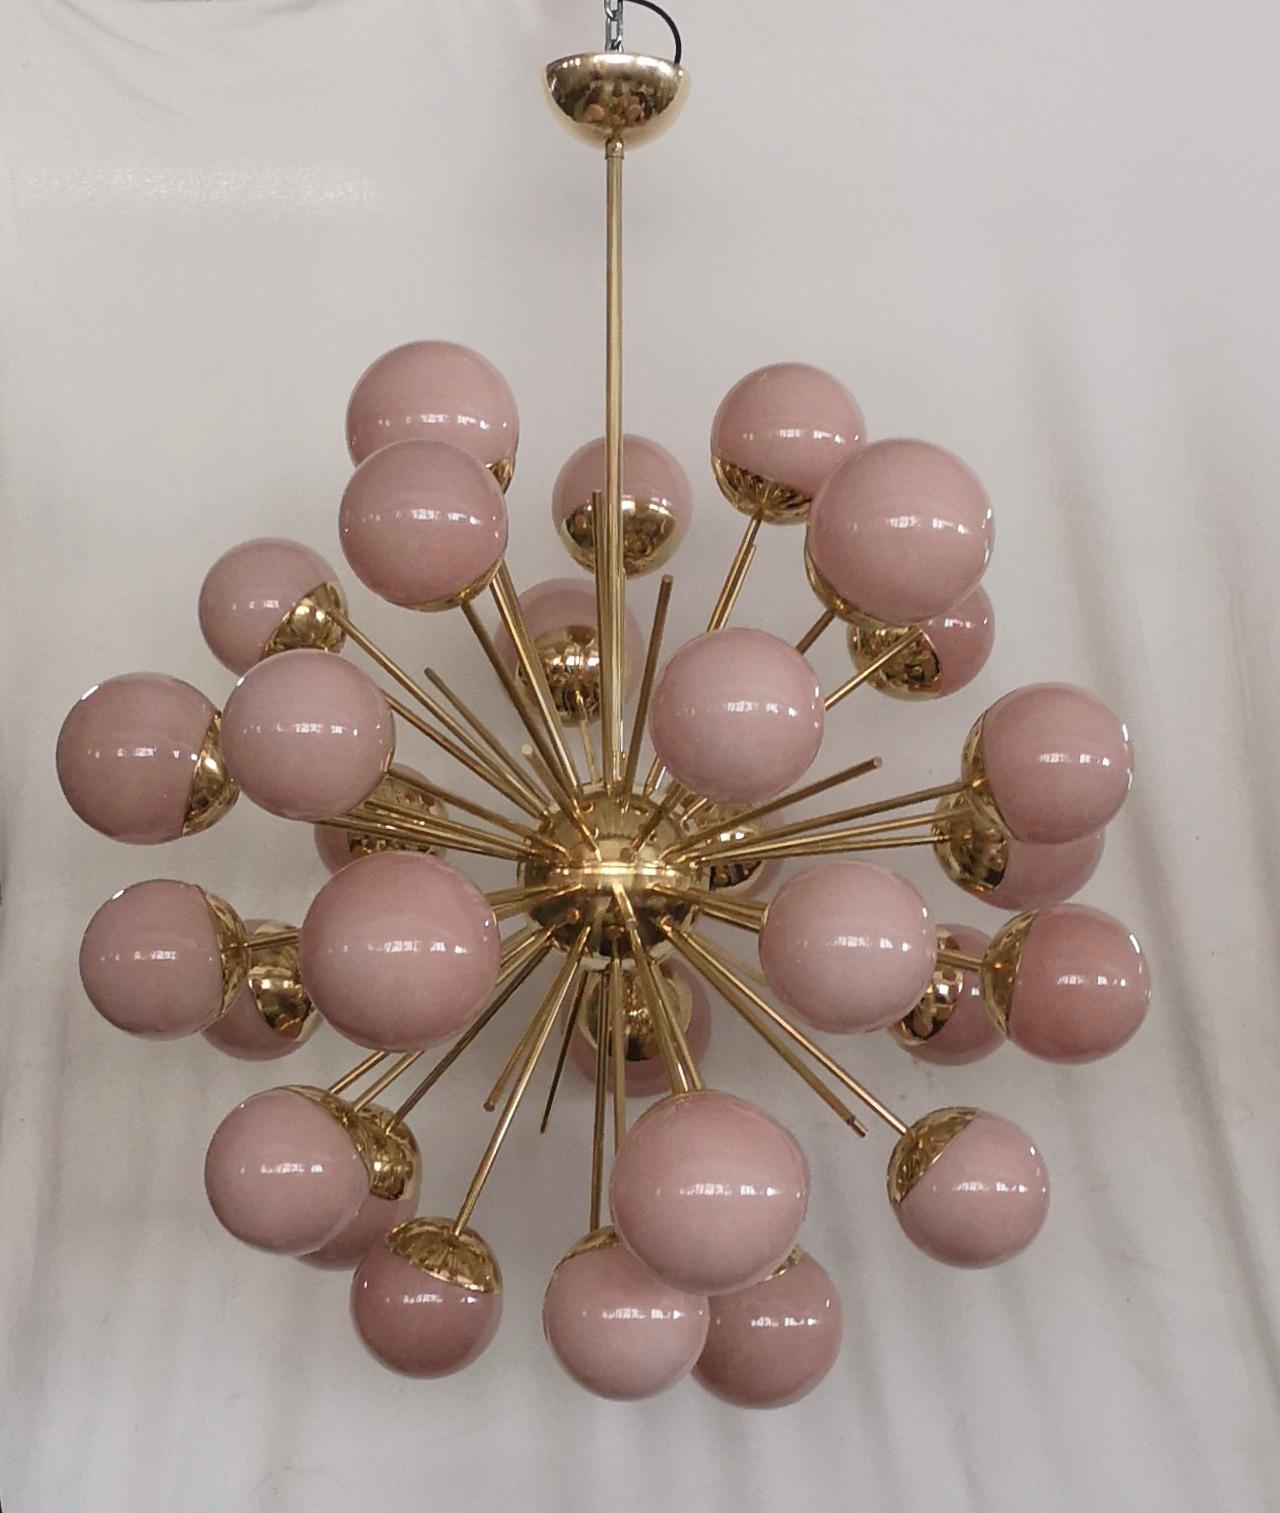 Une fantastique tache de couleur rose, un design étonnant grâce à la forme très particulière de ces sphères de verre rose et pour les fantastiques tiges de laiton. Très élégante, elle meublera et décorera toute votre pièce.

Structure entièrement en